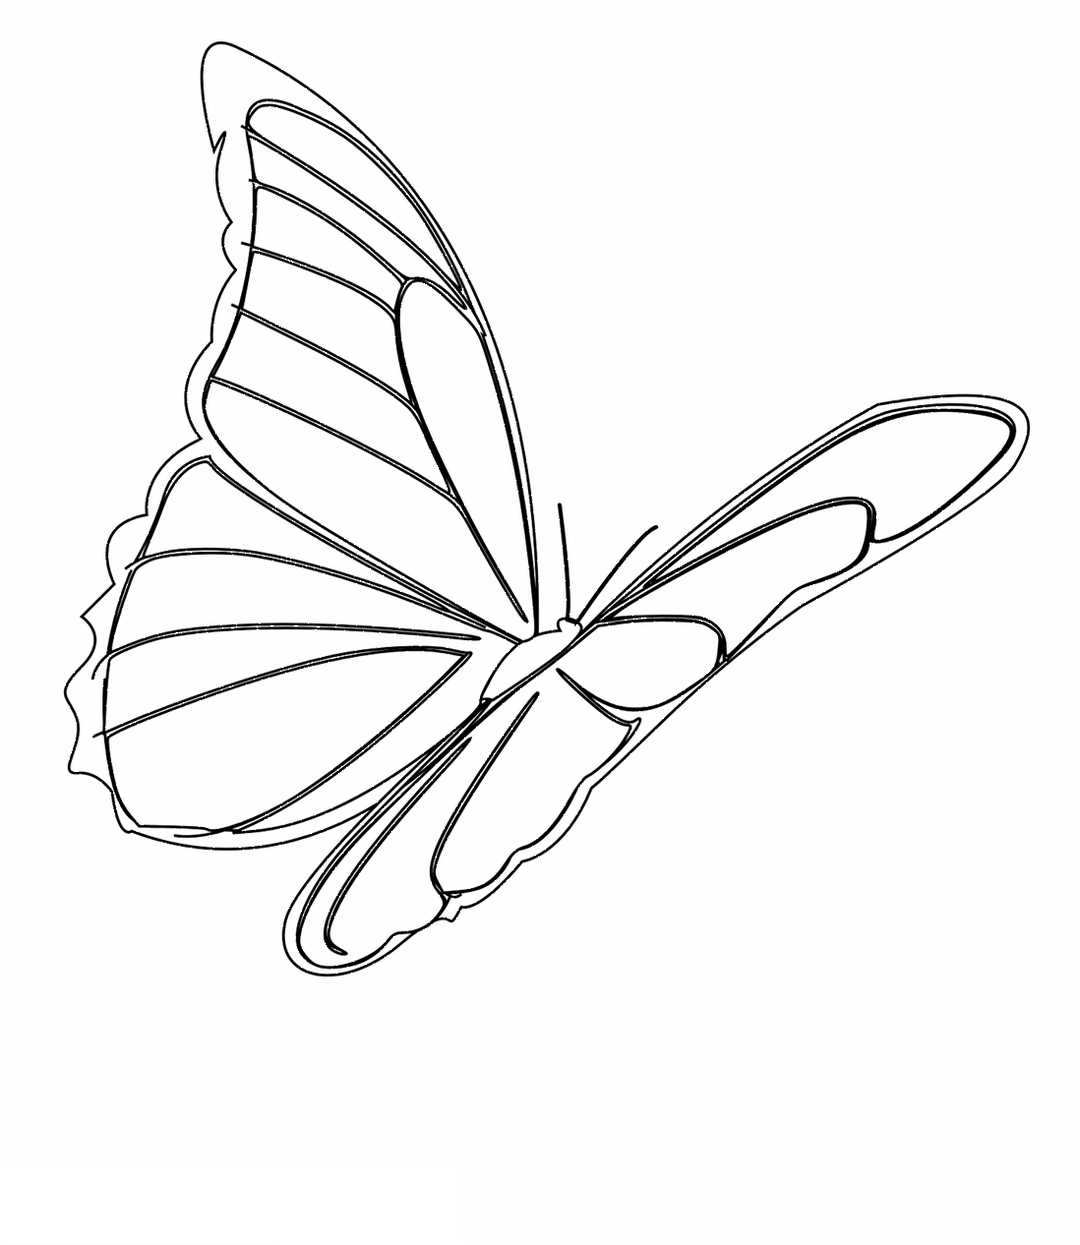 Bộ sưu tập hình vẽ con bướm ấn tượng  Hơn 999 hình vẽ đẹp rực rỡ độ phân  giải 4K